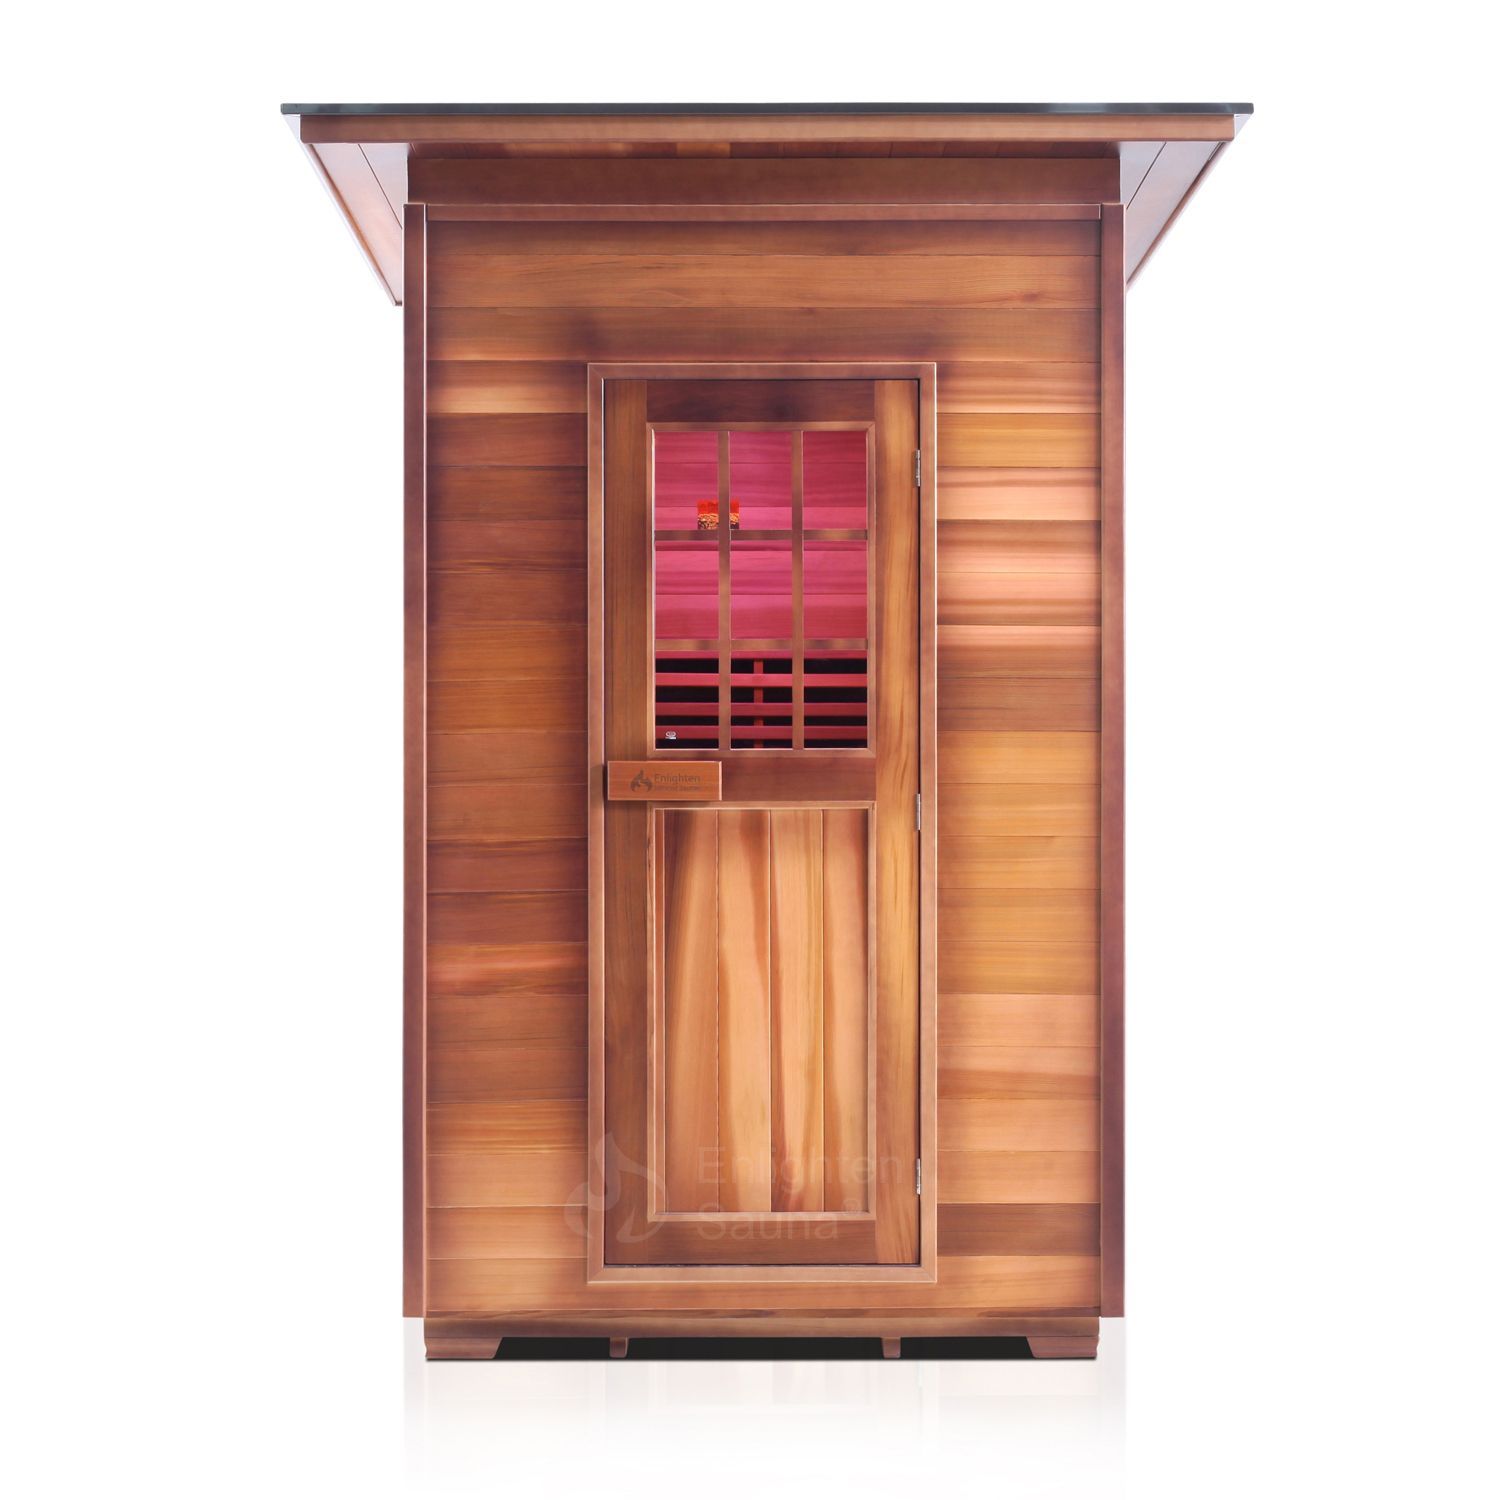 Sierra Full Spectrum Infrared Sauna (2 Person) Saunas Enlighten Sauna 